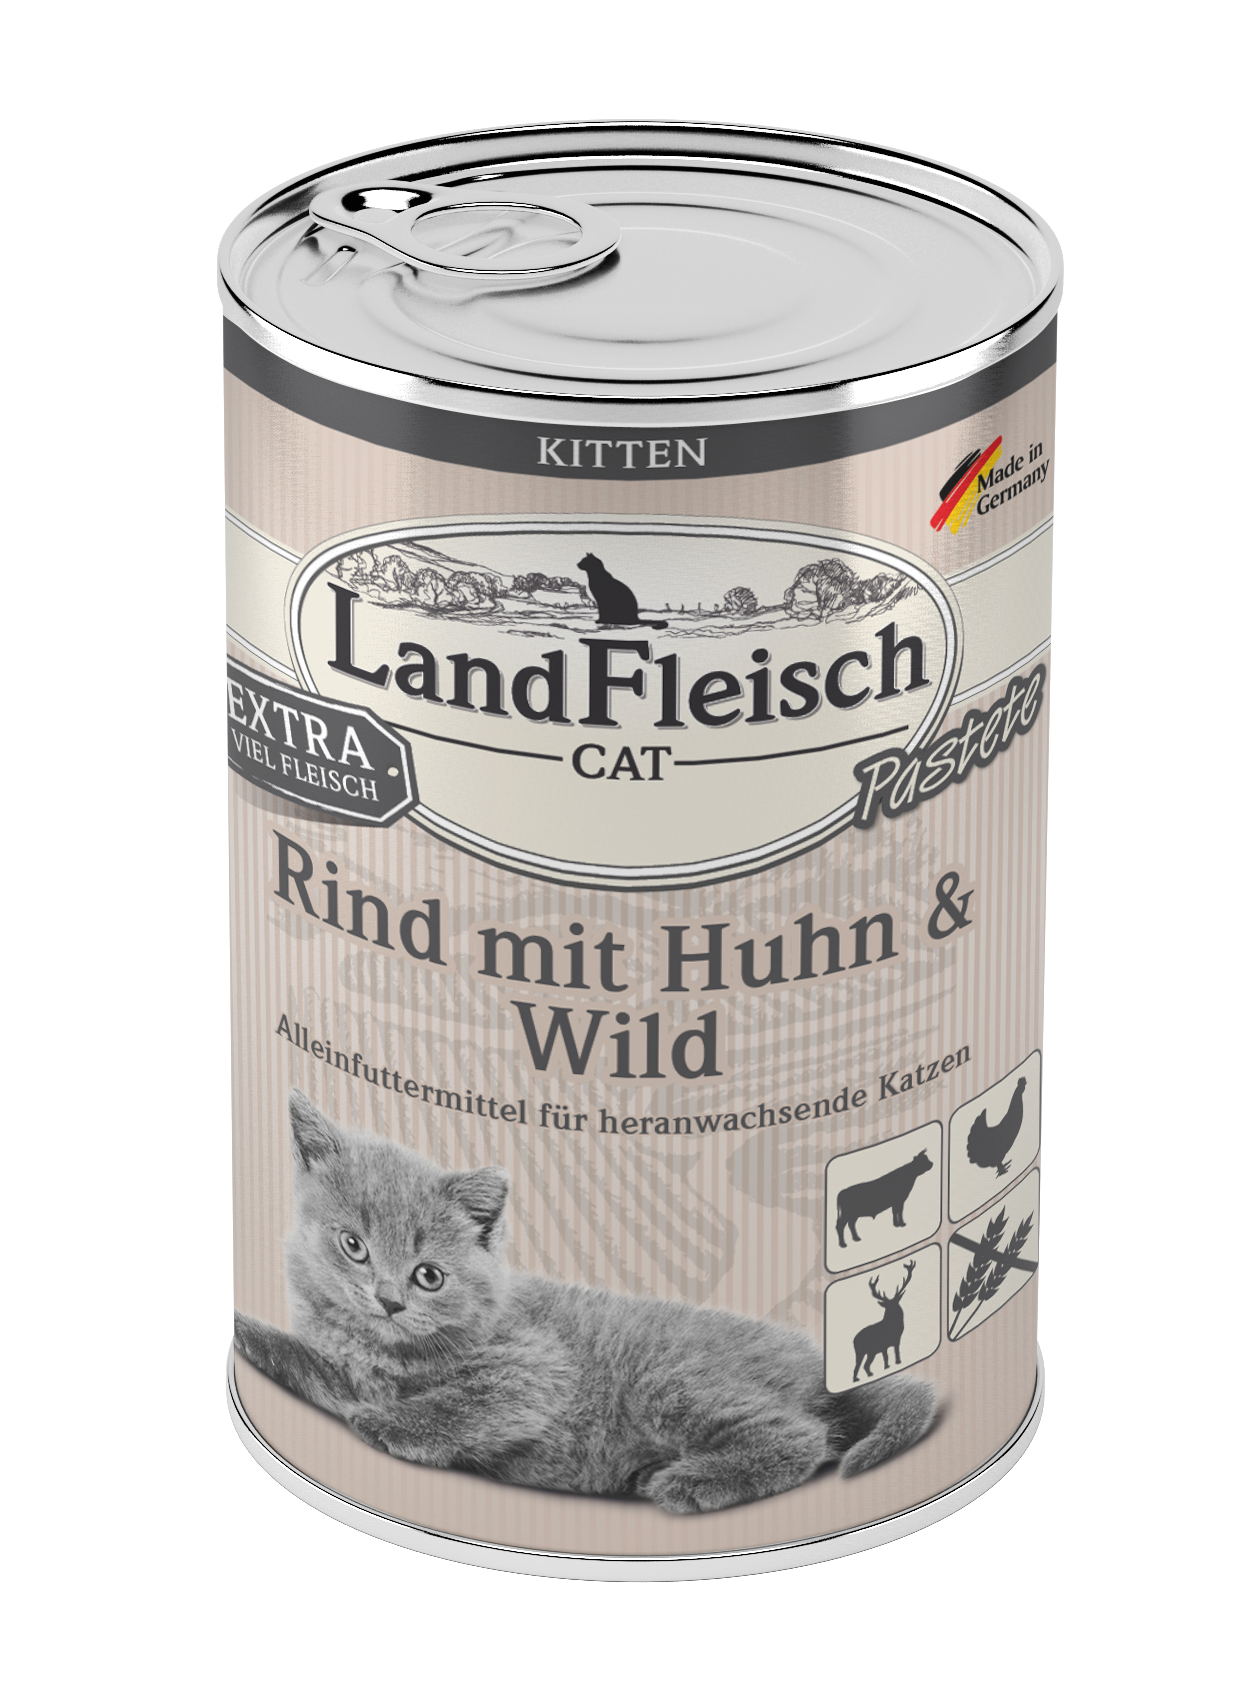 Landfleisch Cat Kitten Pastete Rind mit Huhn & Wild 400g